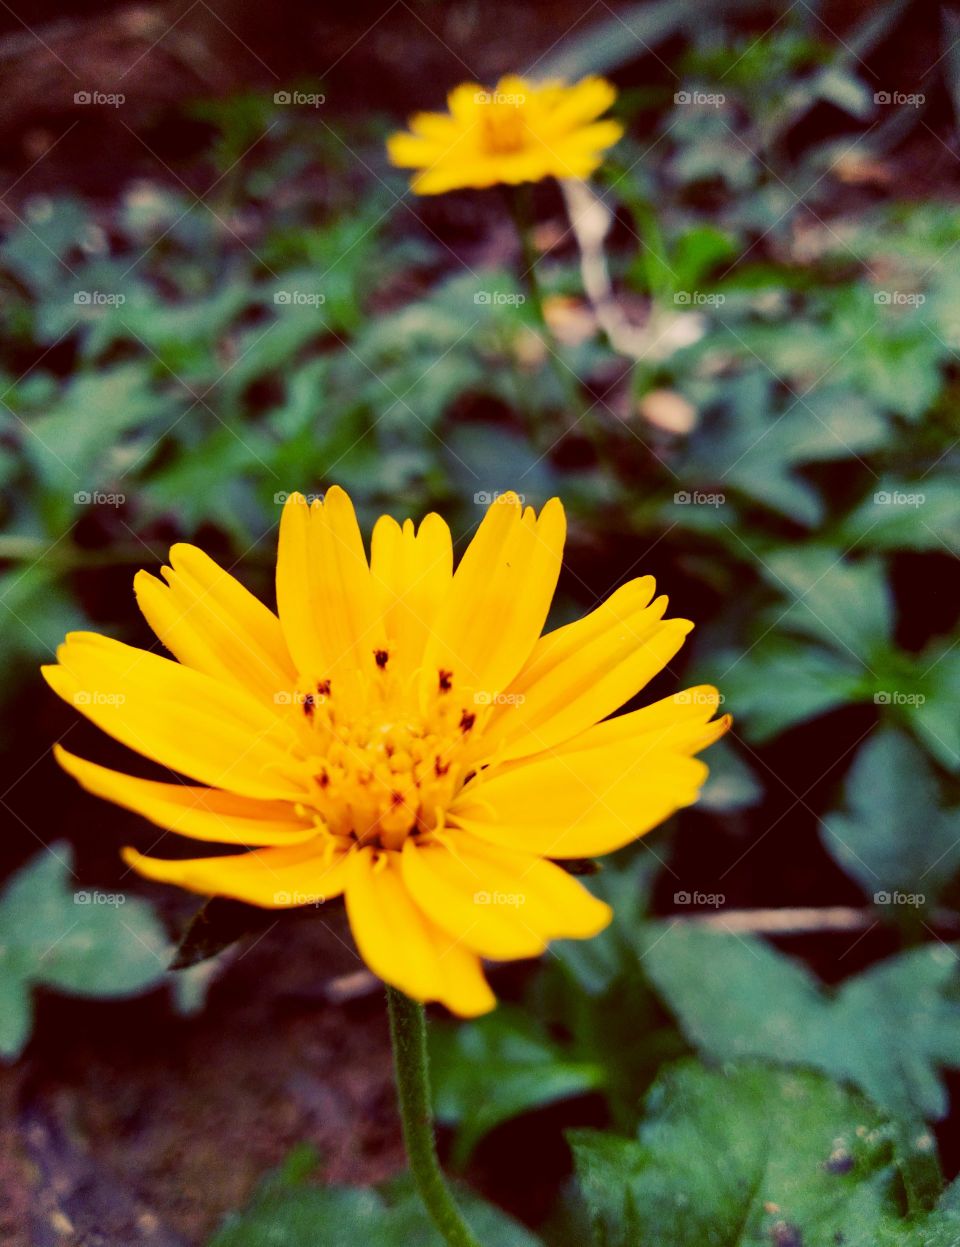 Close up shot of a yellow grass flower